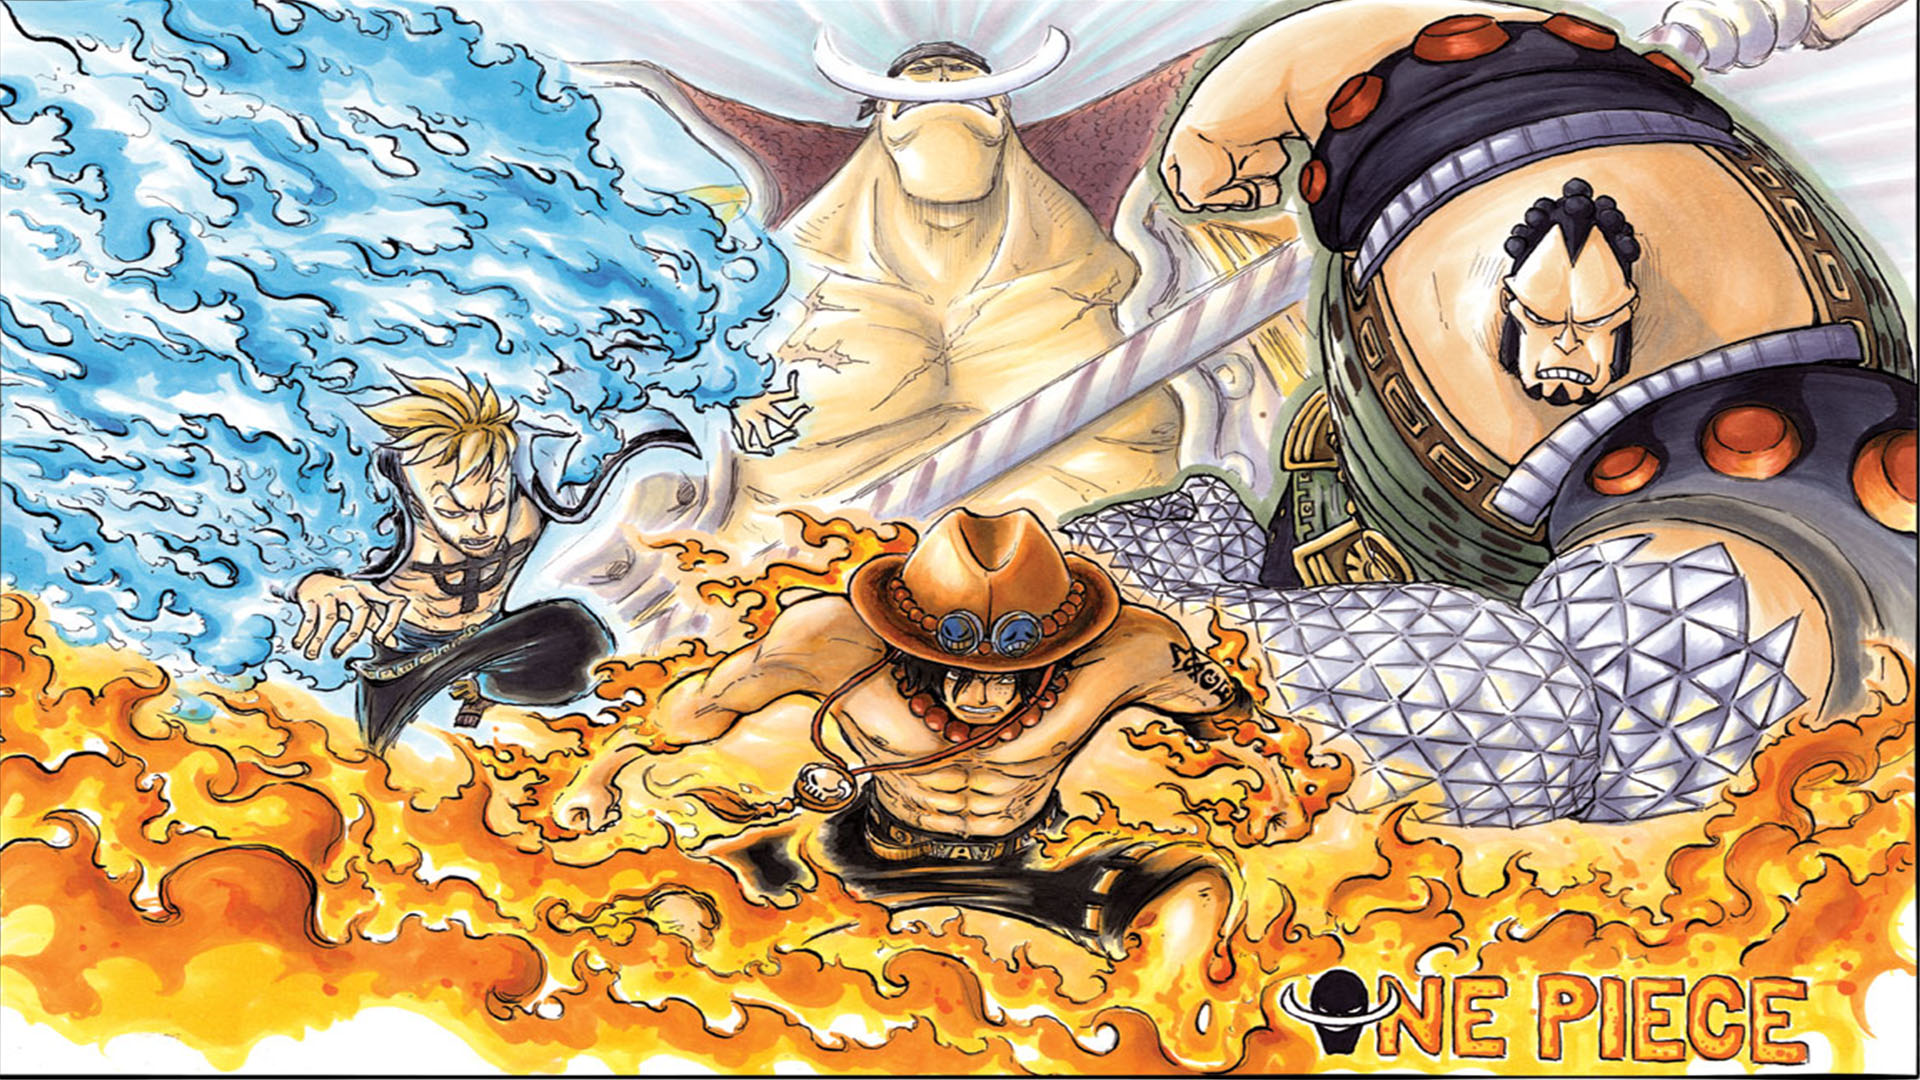 Bộ ảnh đen trắng về các nhân vật trong One Piece mang đậm chất nghệ thuật |  Cotvn.Net | One piece, Anime, Nghệ thuật